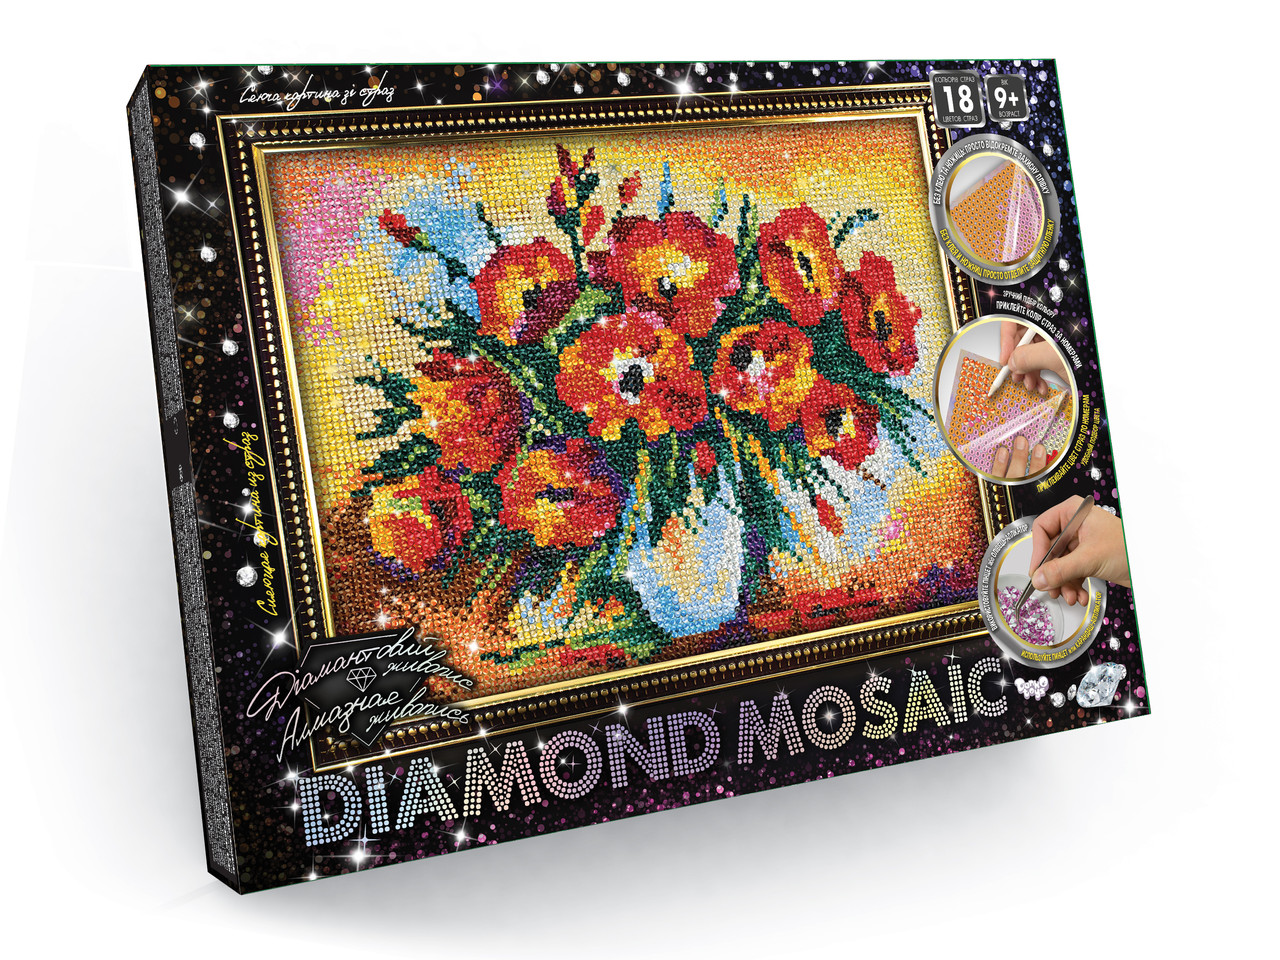 Алмазна мозаїка "Diamond mosaic", мала, в кор. 35*27*3 см (10 шт.)